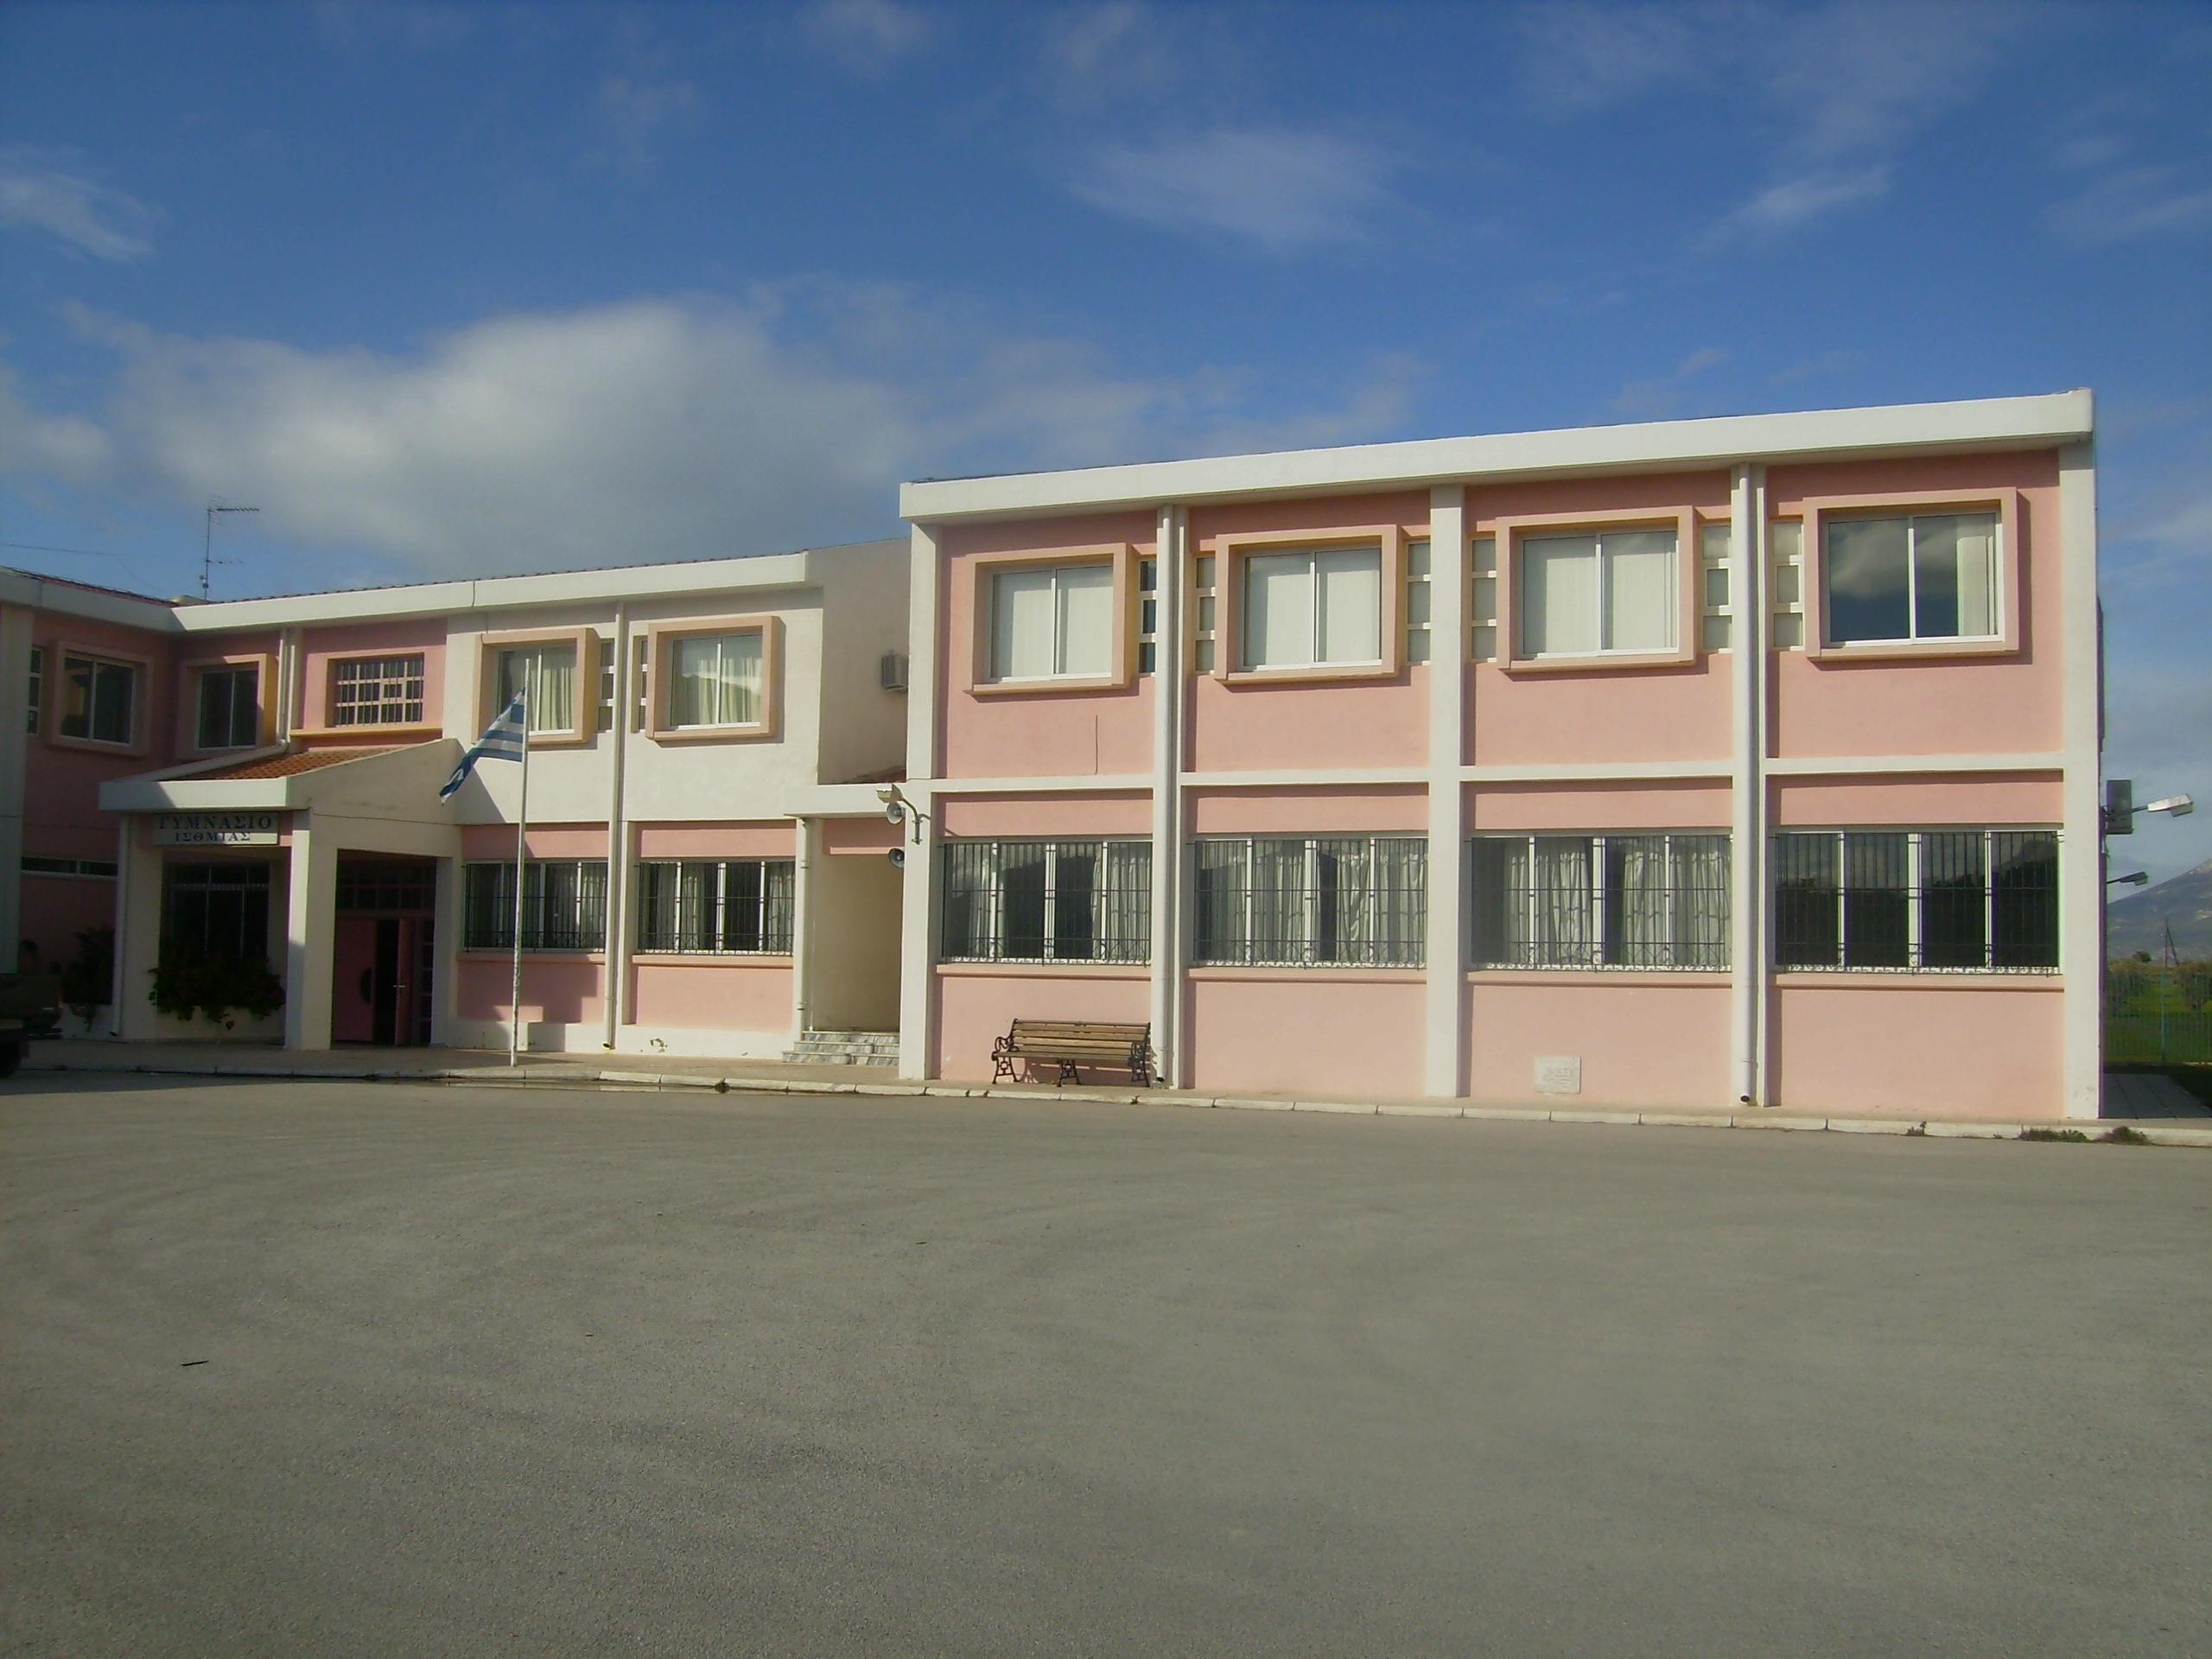 Σοκ στην Κύπρο: Μαθητής γυμνασίου έπεσε από τον πρώτο όροφο σχολείου!